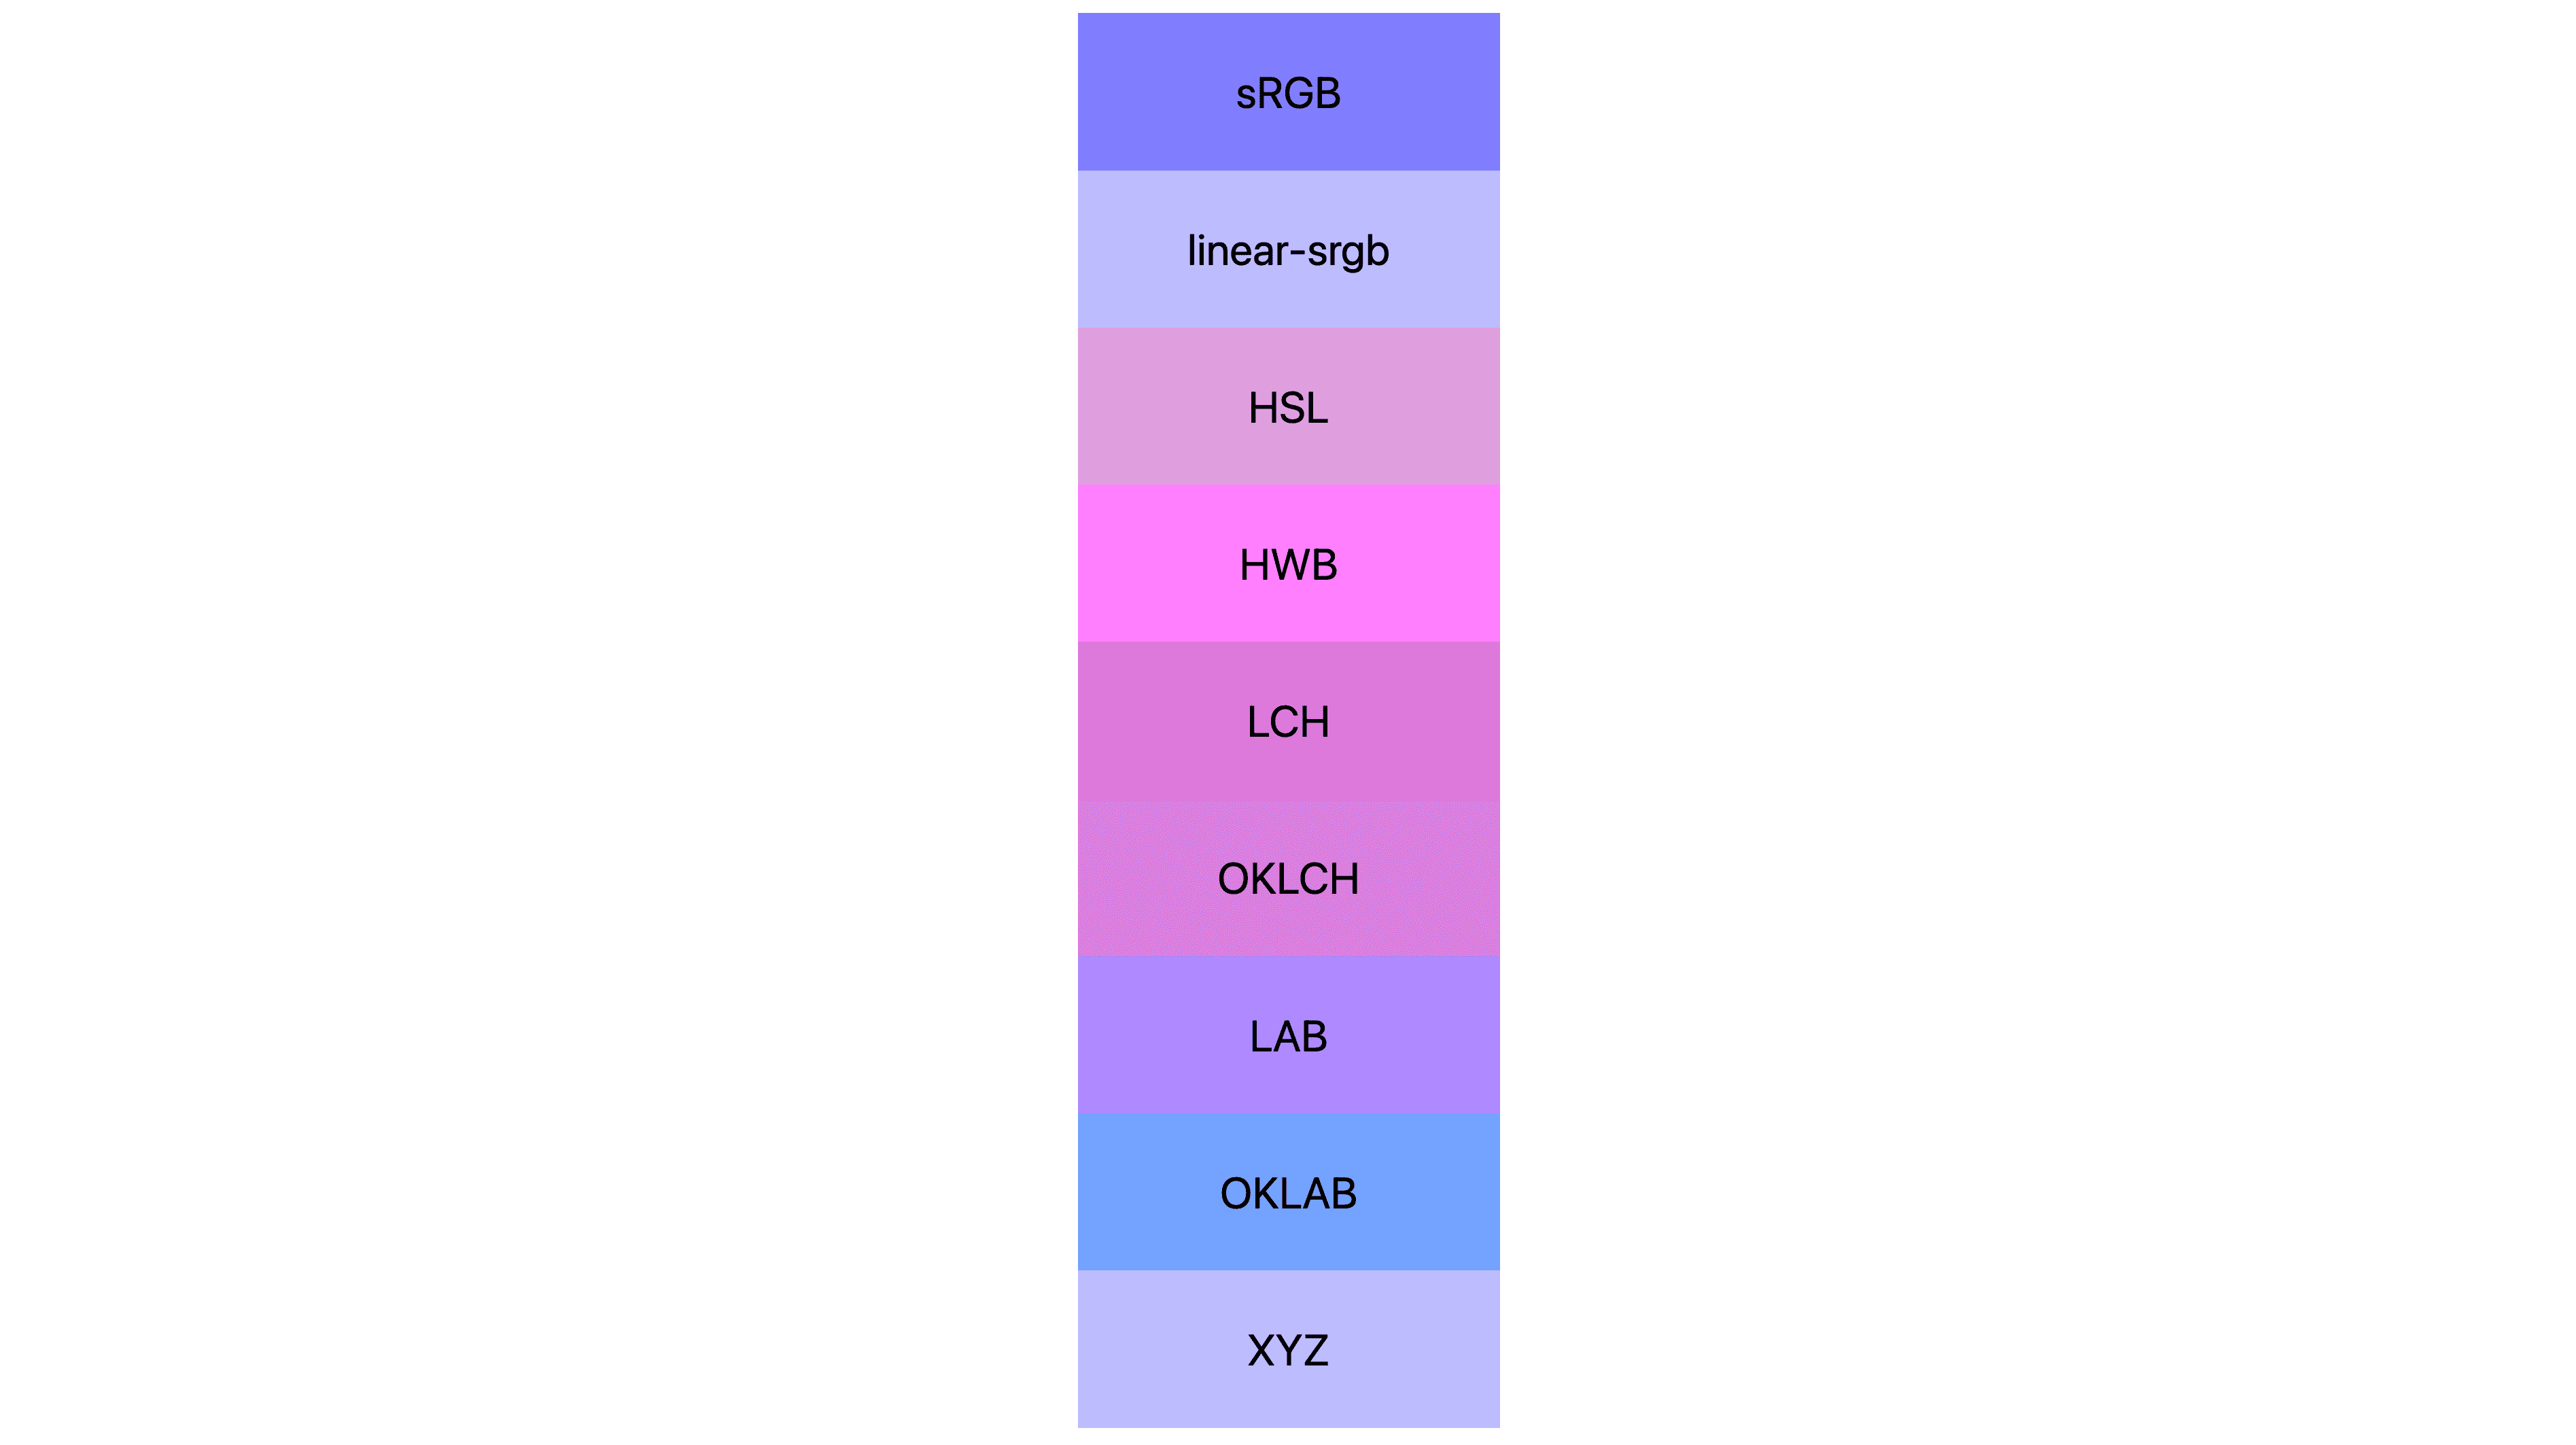 सात अलग-अलग रंगों के स्पेस (एसआरजीबी, लीनियर-एसआरजीबी, lch, oklch, lab, oklab, xyz ) हैं. हर रंग के नतीजे अलग-अलग हैं. कई गुलाबी या बैंगनी रंग के होते हैं, लेकिन कुछ अभी भी नीले होते हैं.